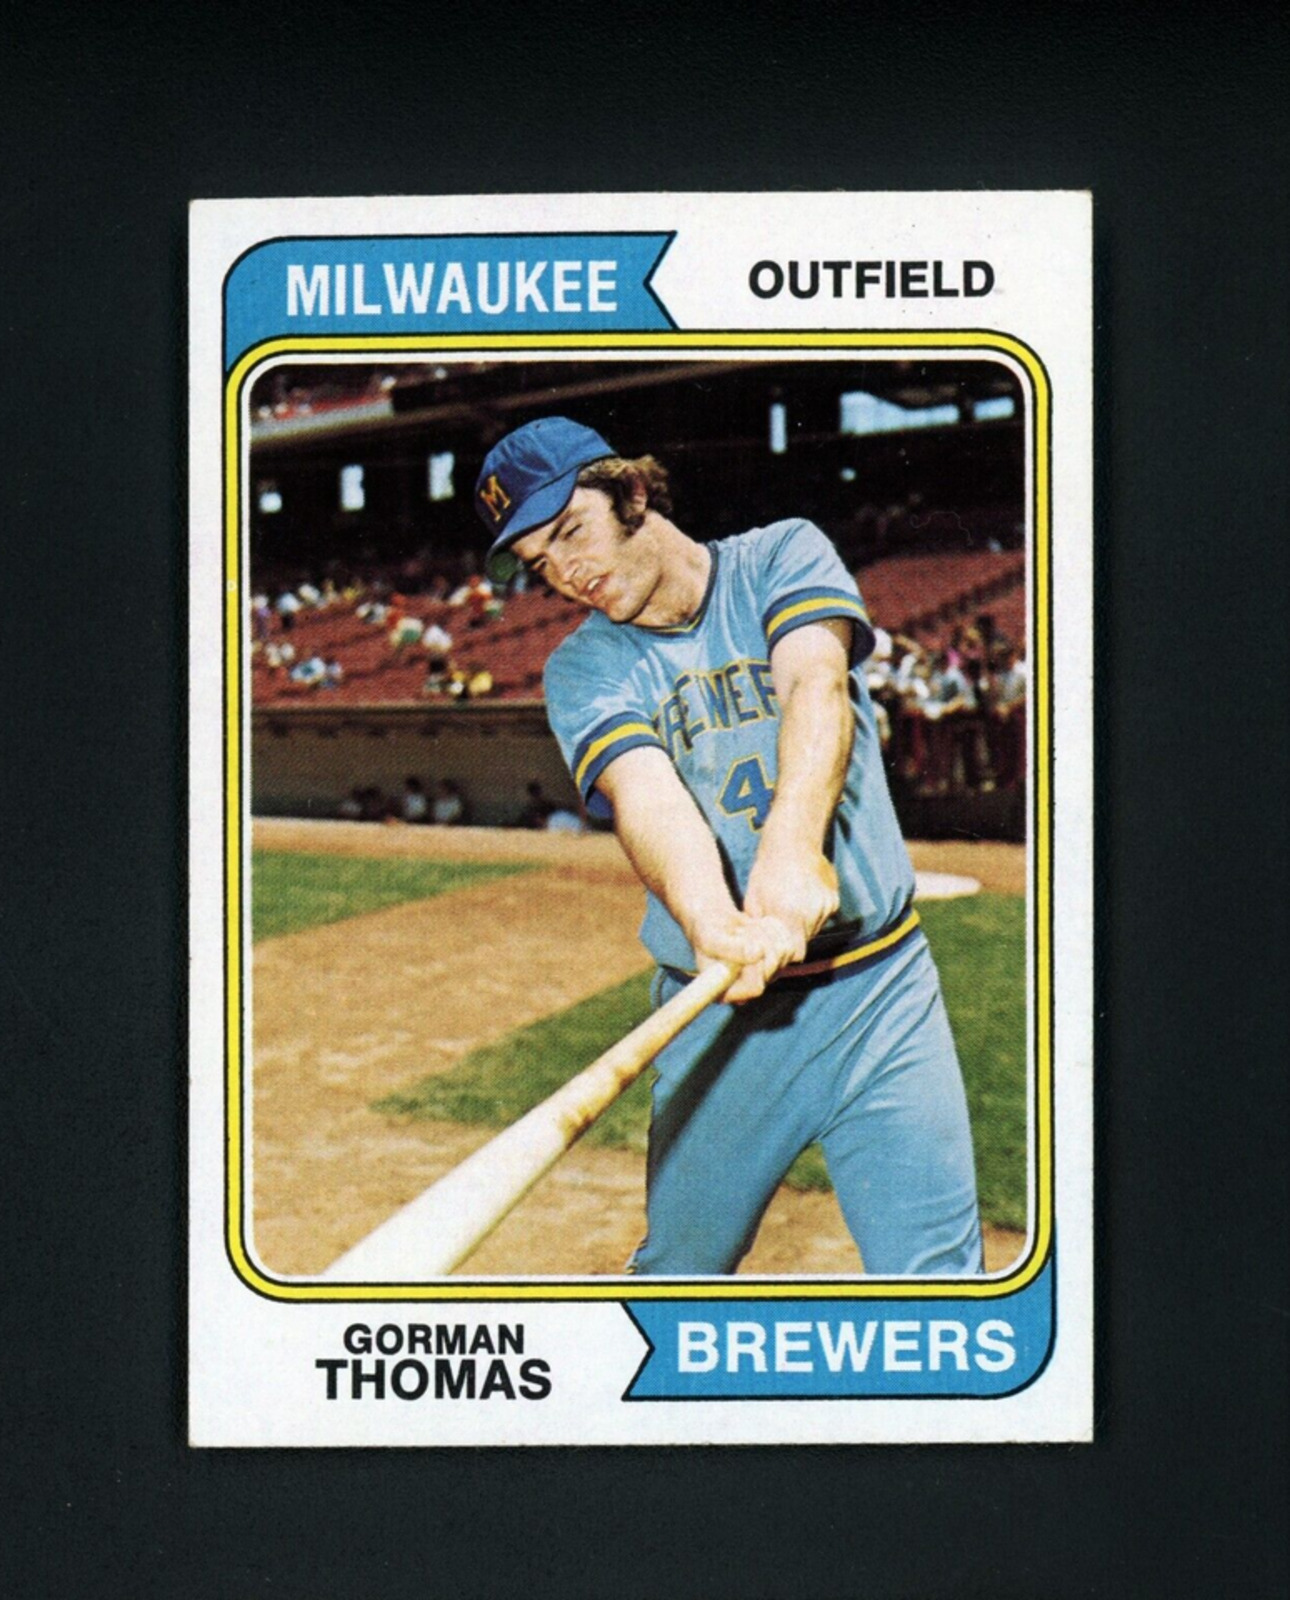 1974 Topps Gorman Thomas rookie card